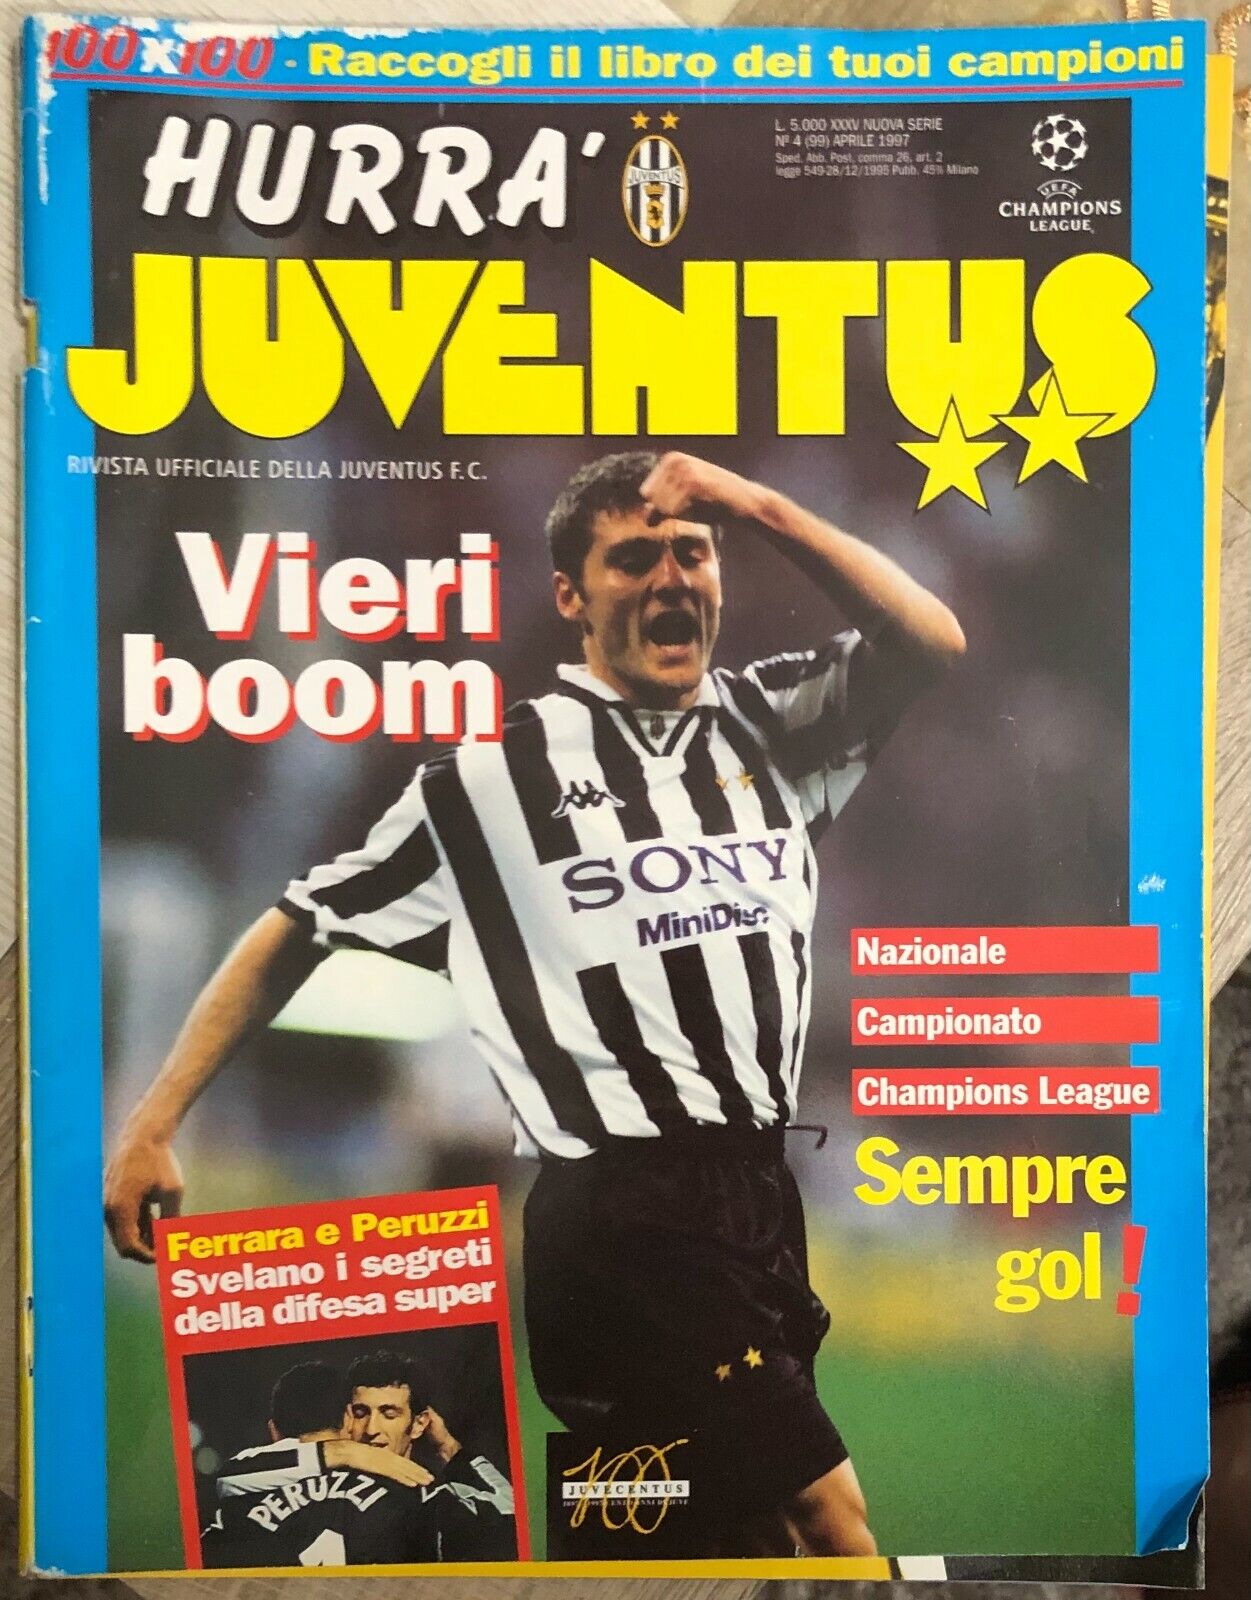 Hurr? Juventus n. 4/1997 di Aa.vv.,  1997,  Juventus F.c.